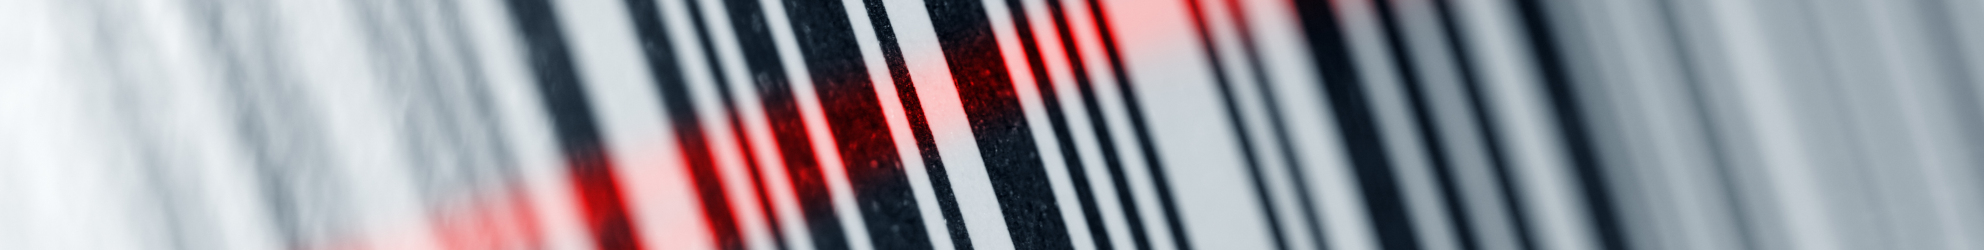 Strichcode mit GTIN wird von rotem Laserscanner ausgelesen